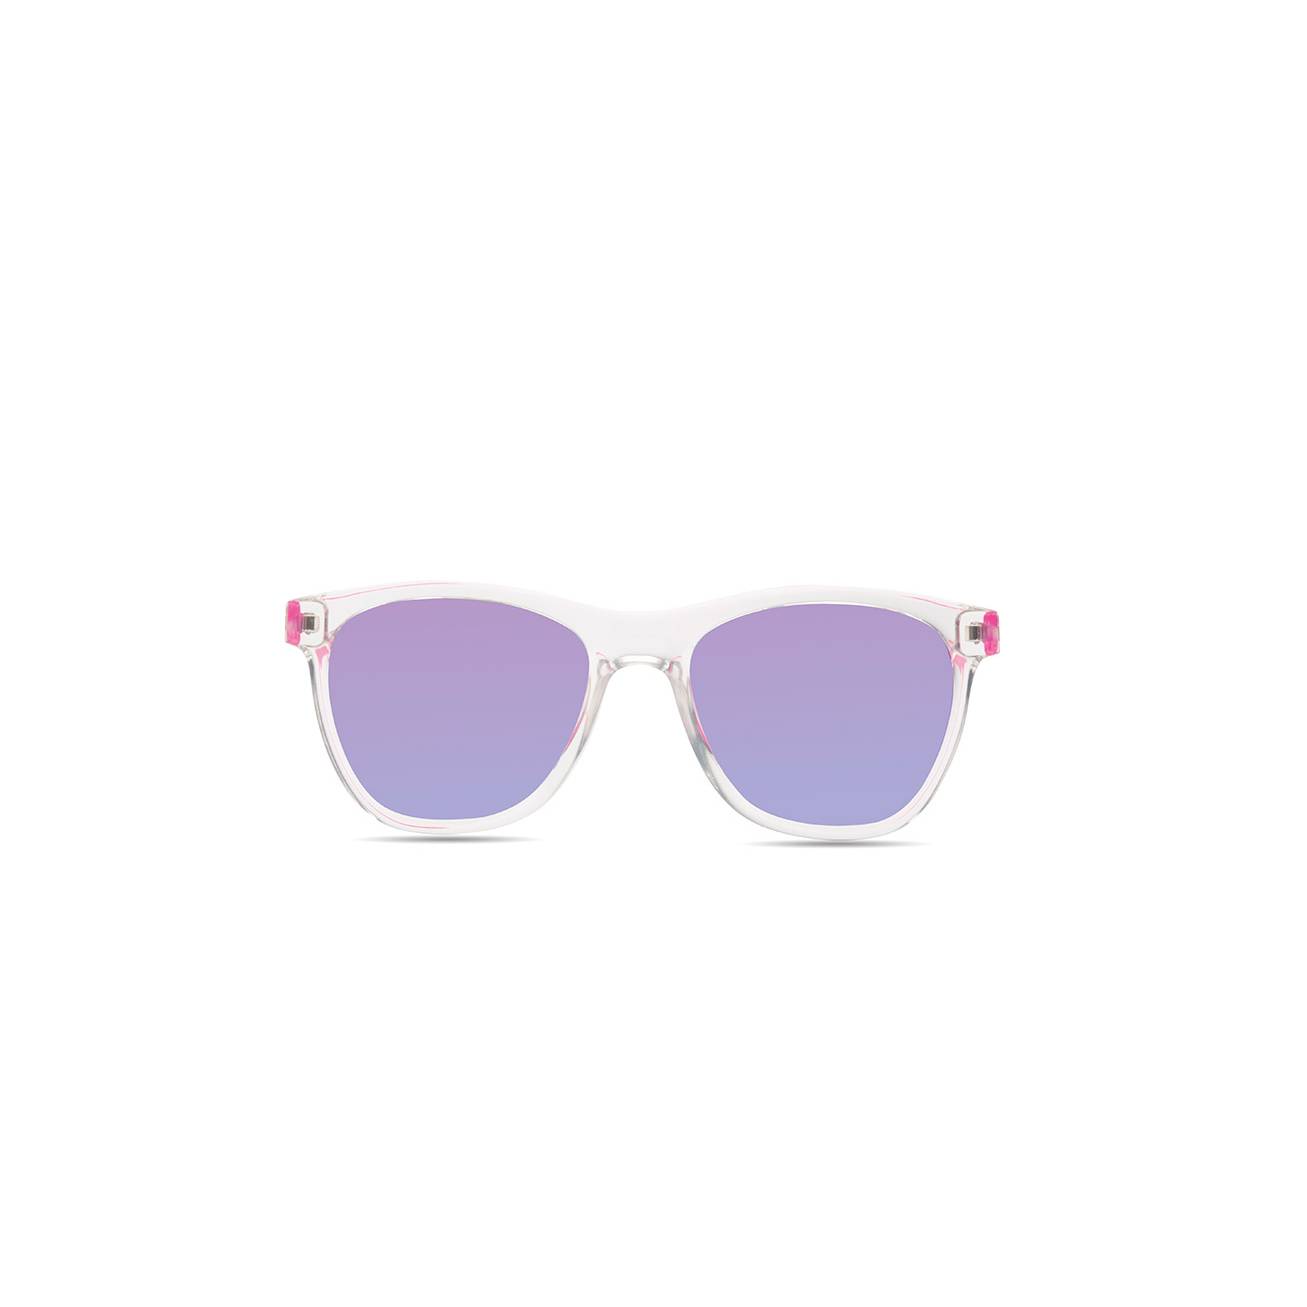 HZ Kay SE-600505-HZ occhiali sportivi con lenti di colore viola specchiato